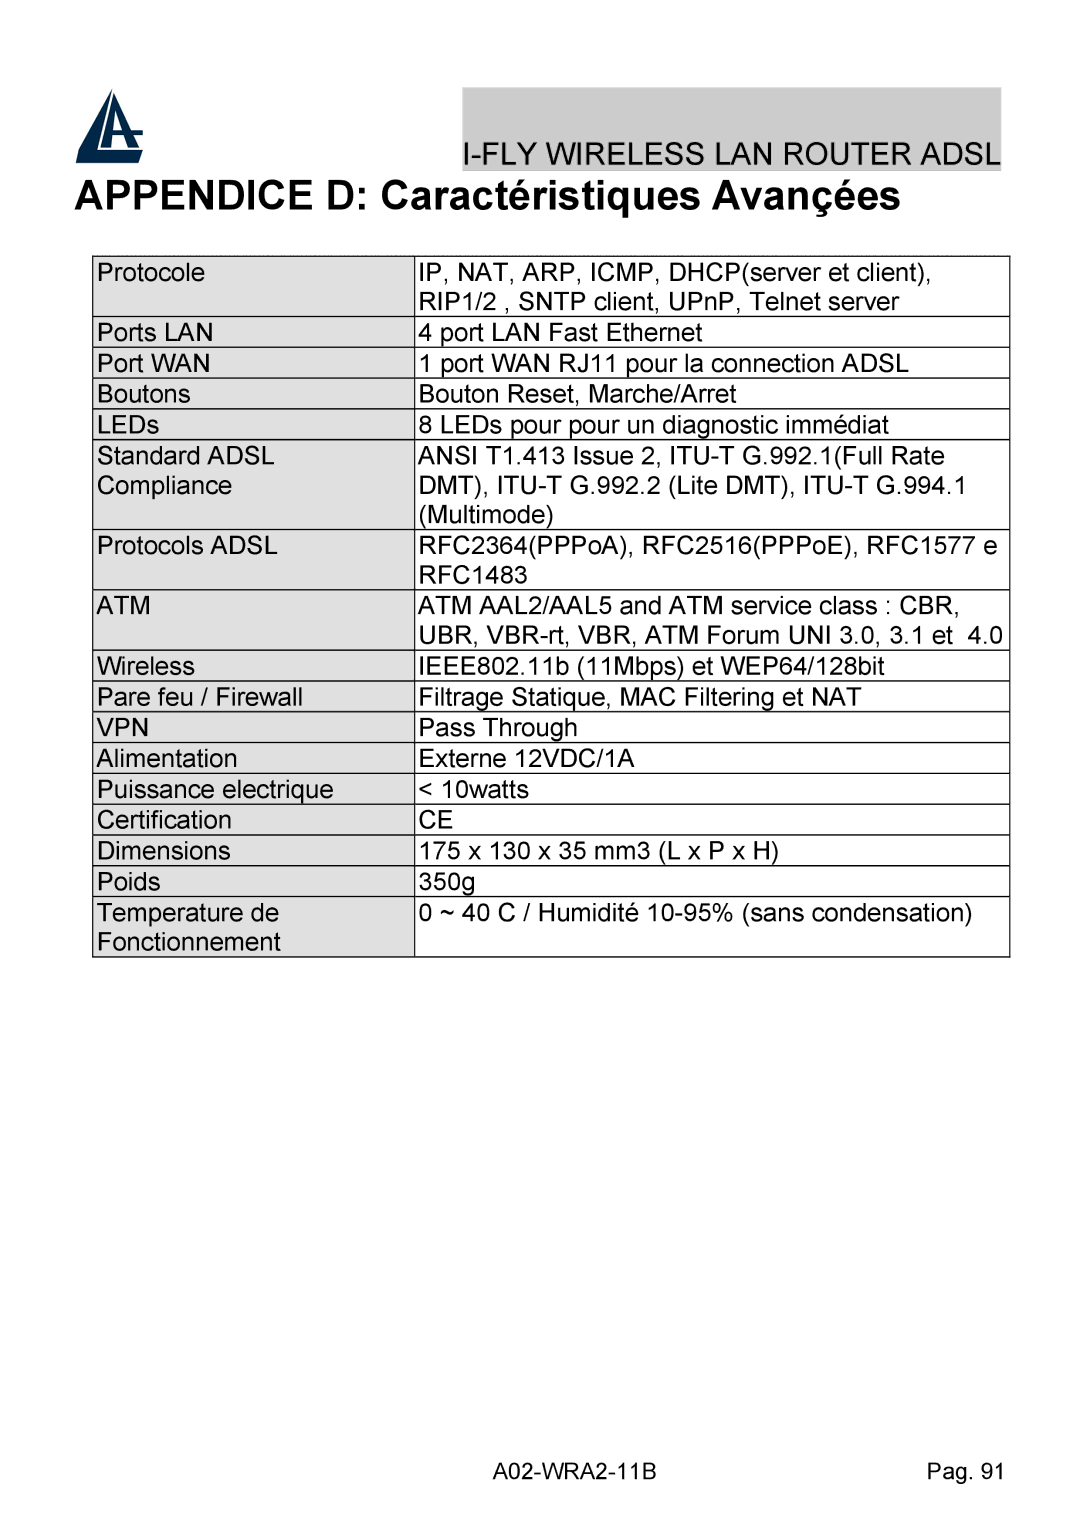 Bissell A02-WRA2-11B manual Appendice D Caractéristiques Avançées, Atm 